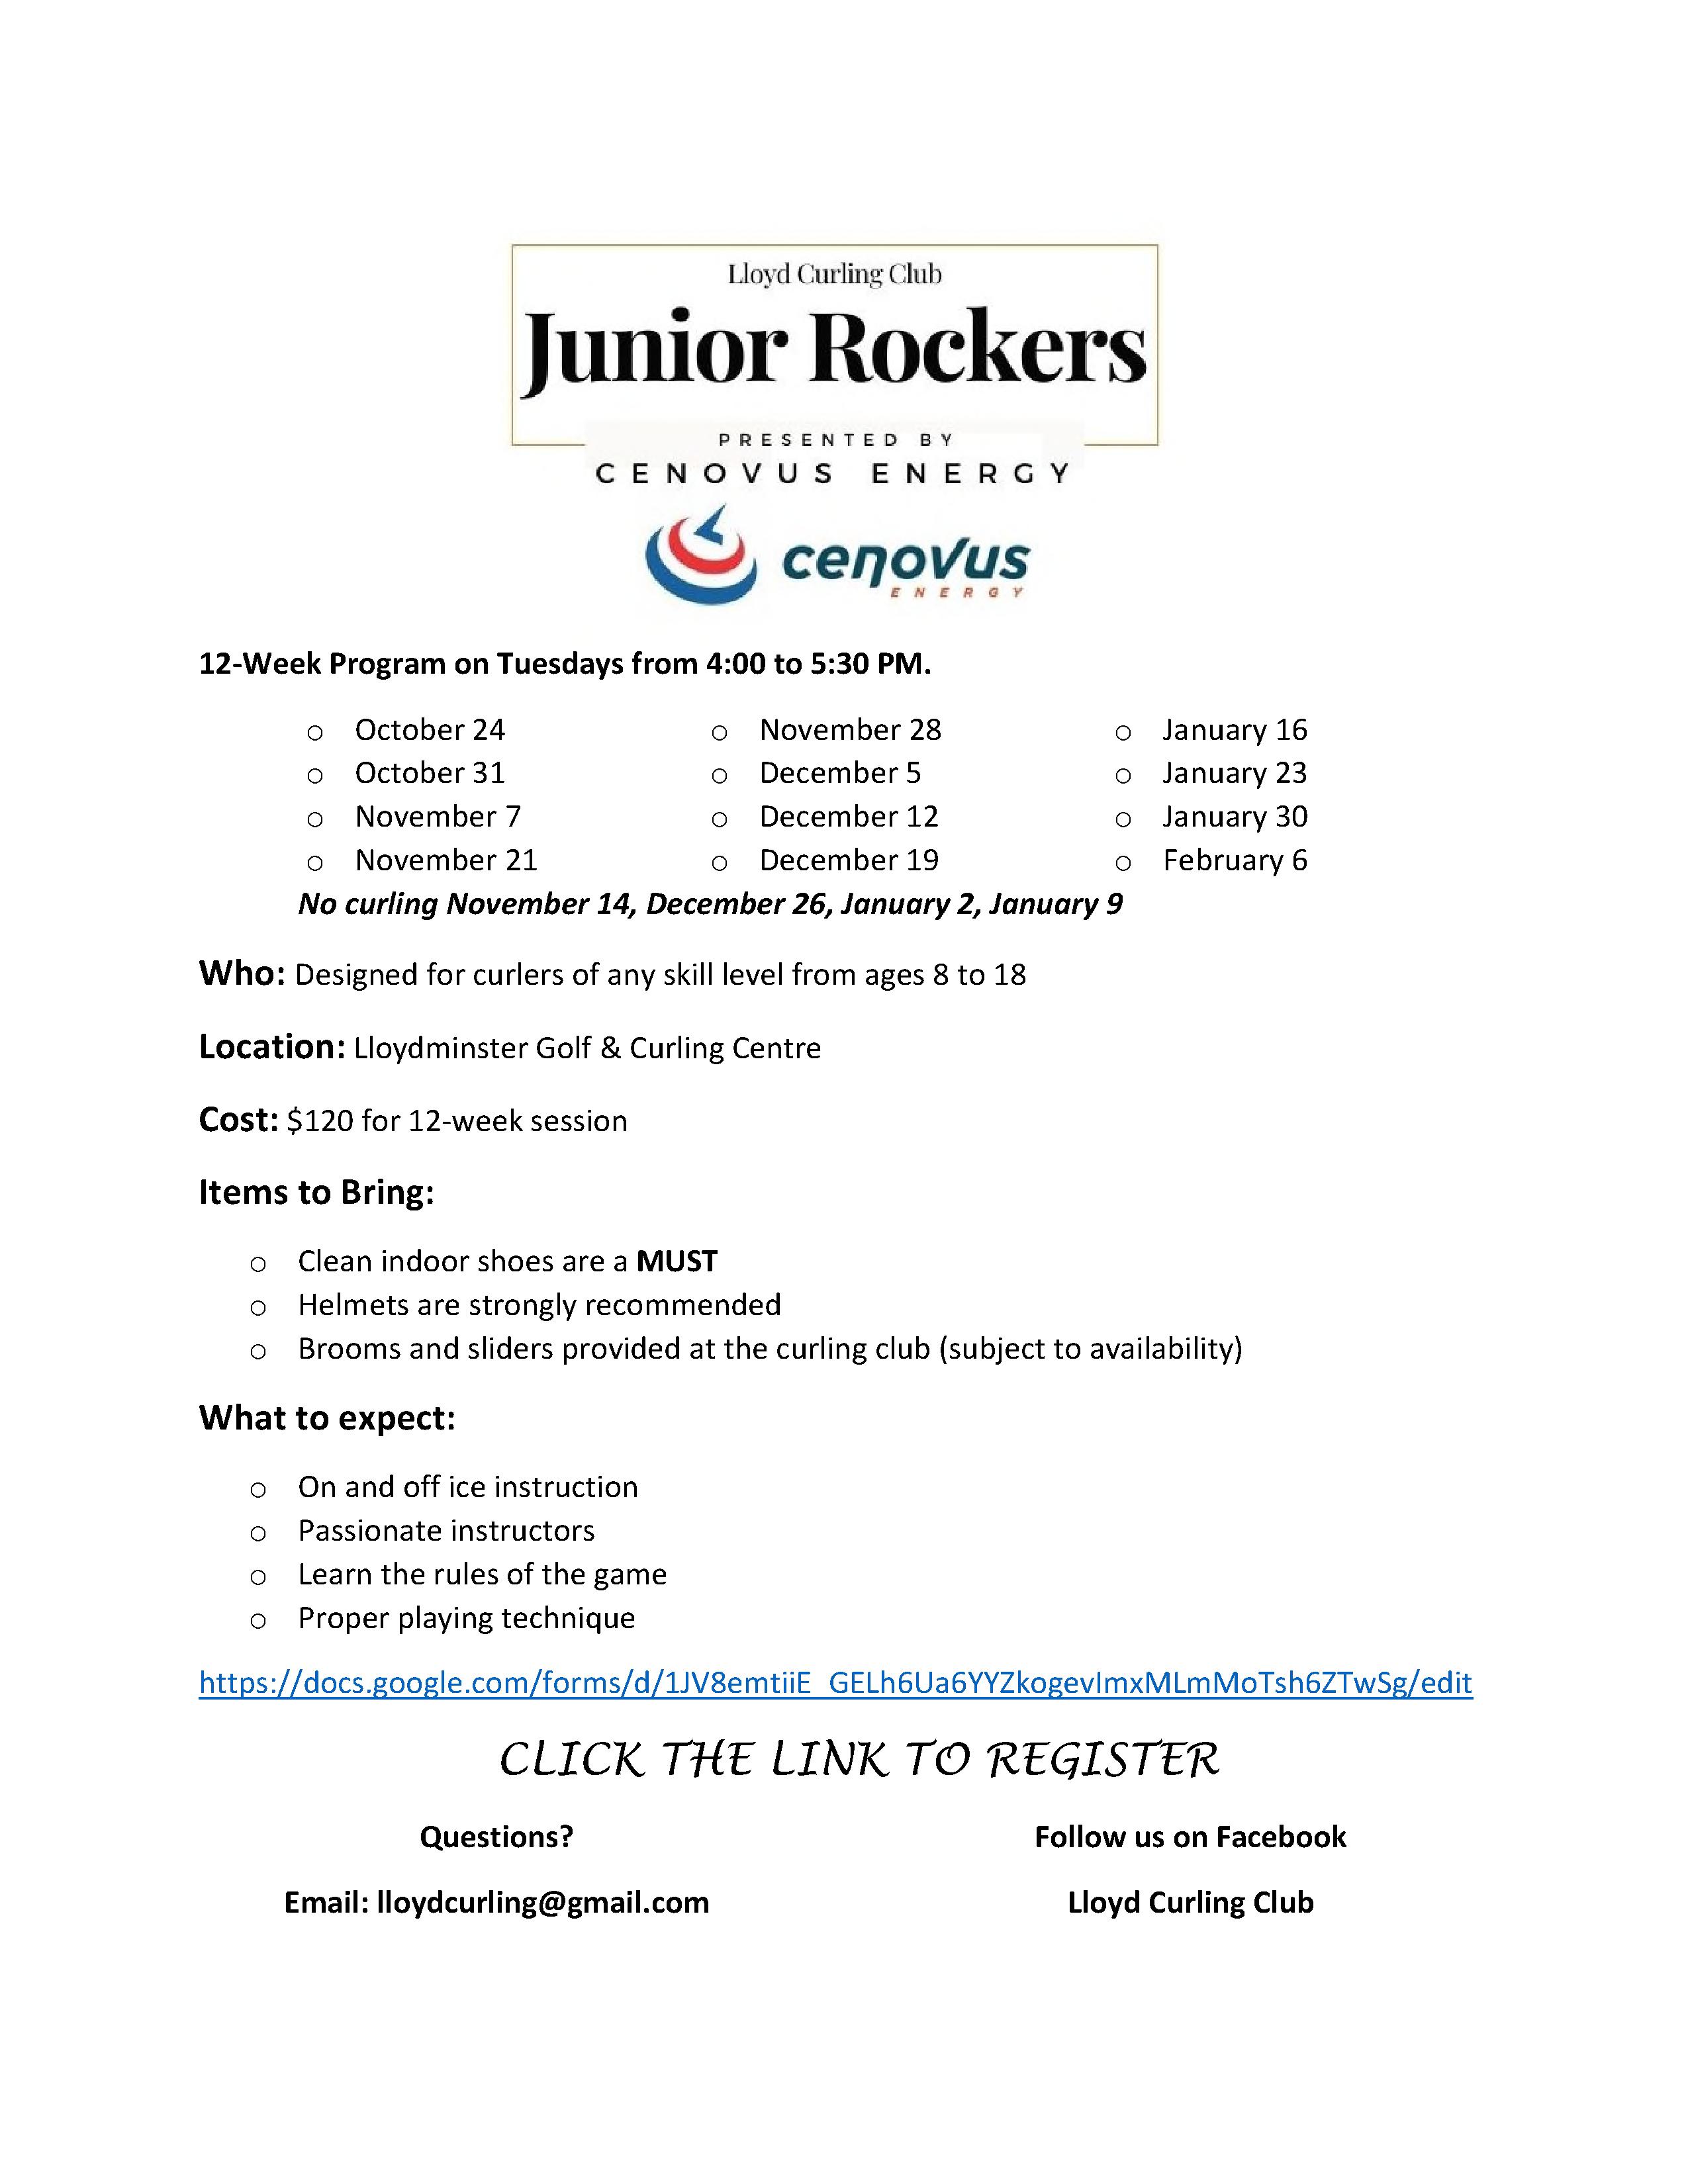 Junior Rockers Registration Info Poster